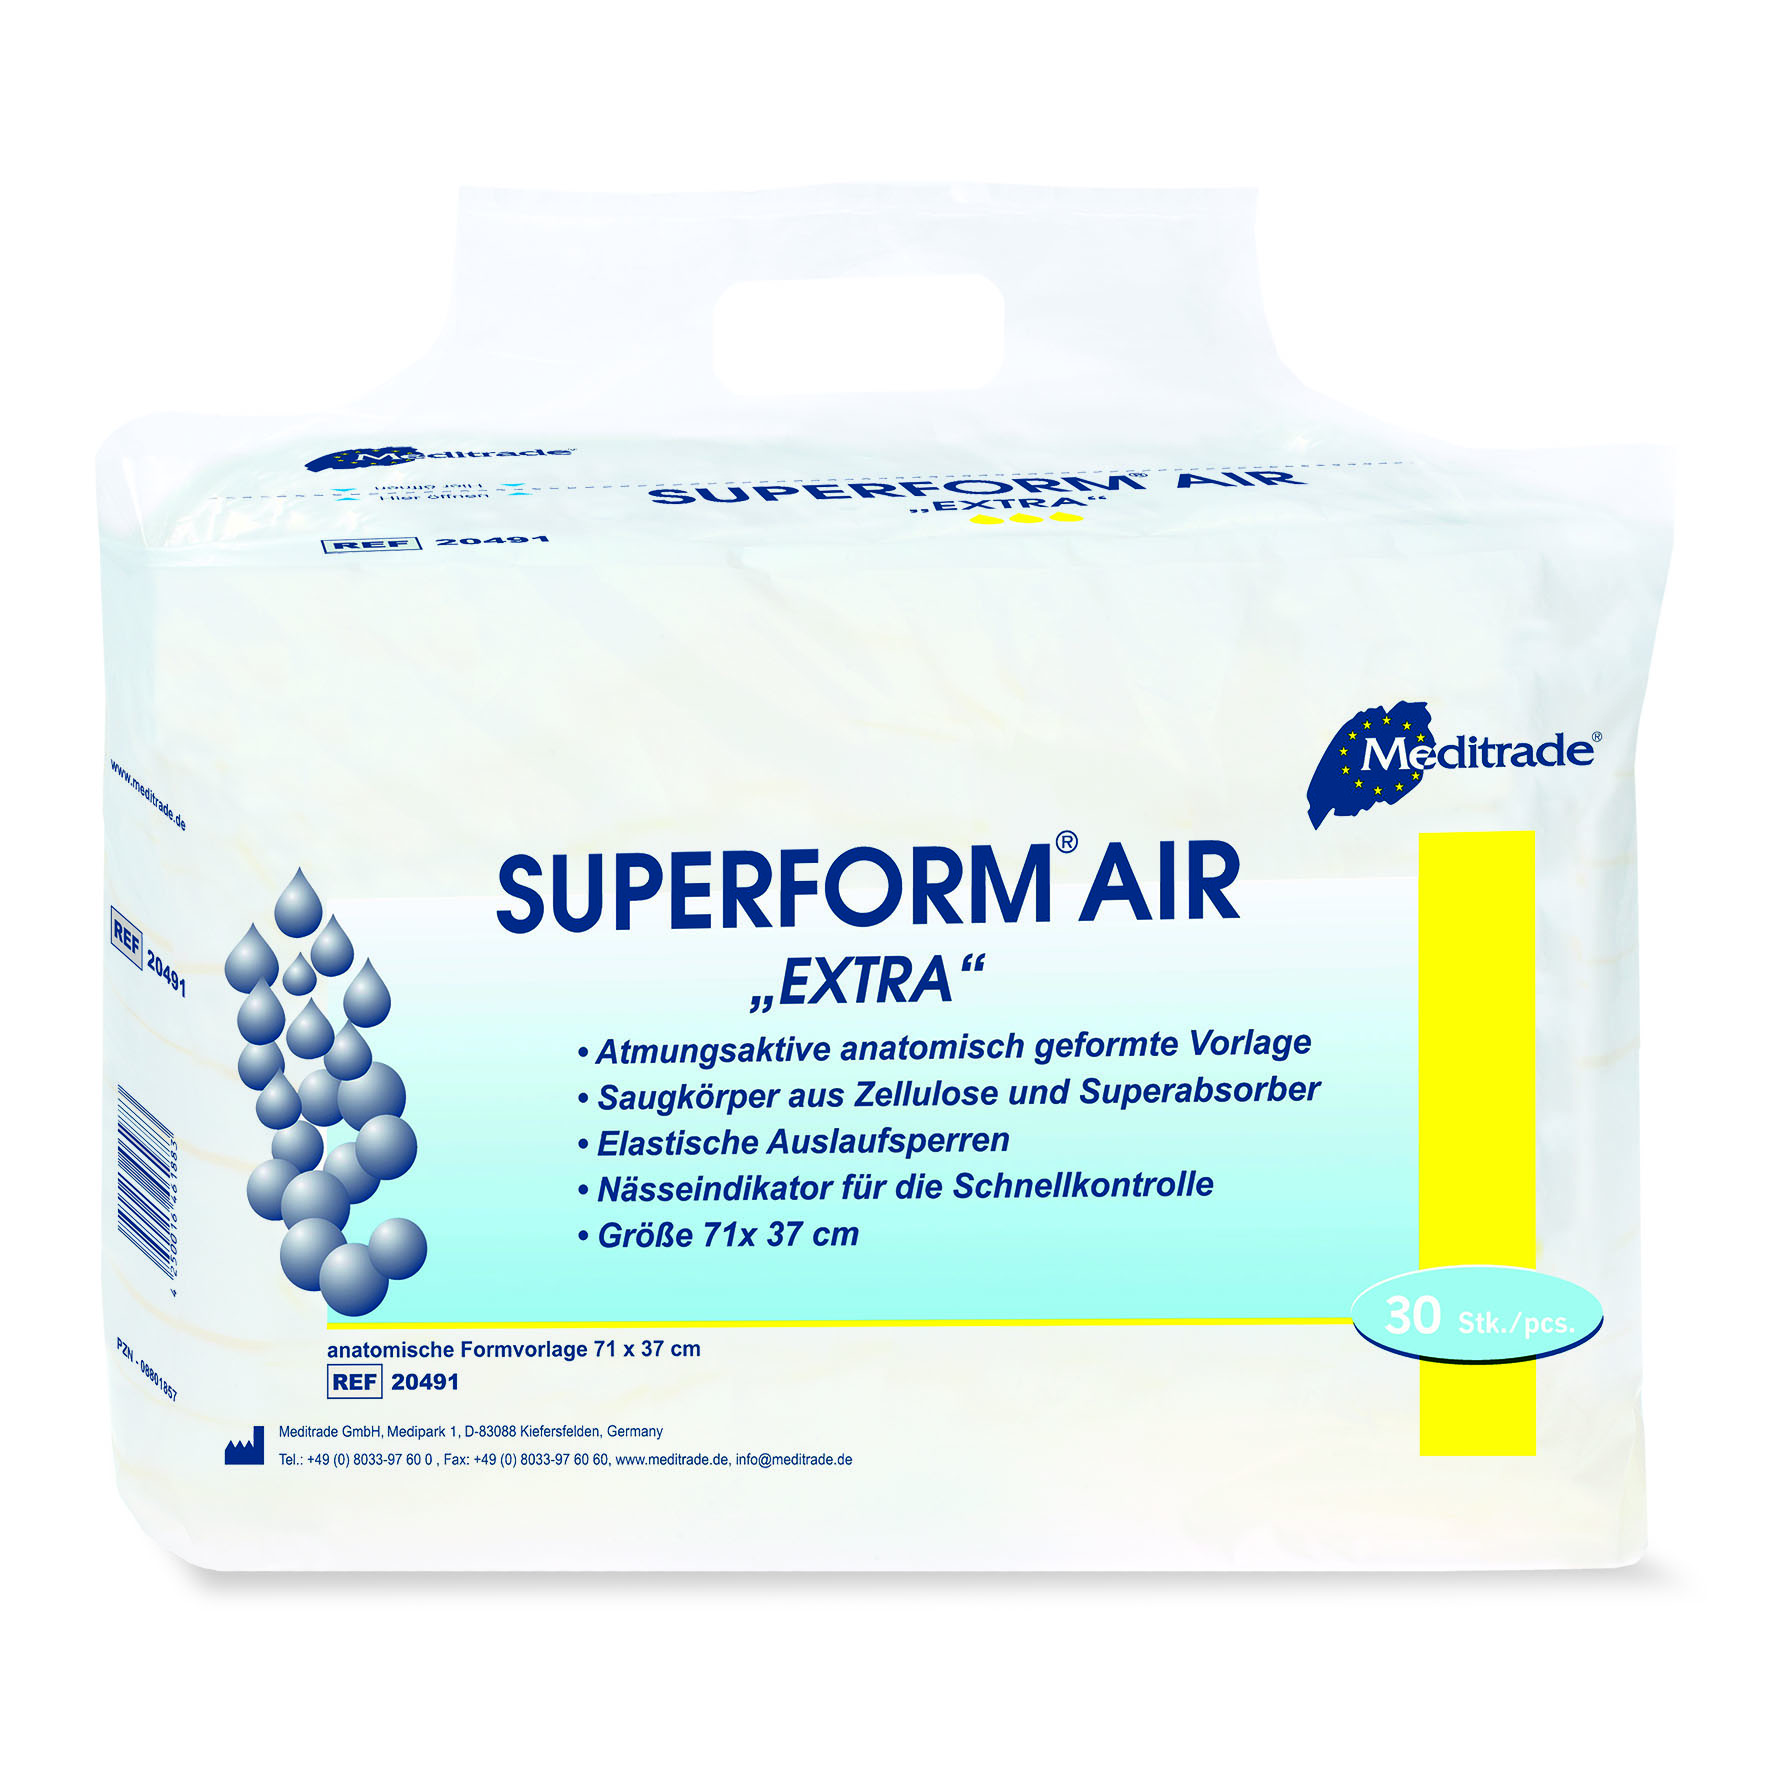 Superform AIR